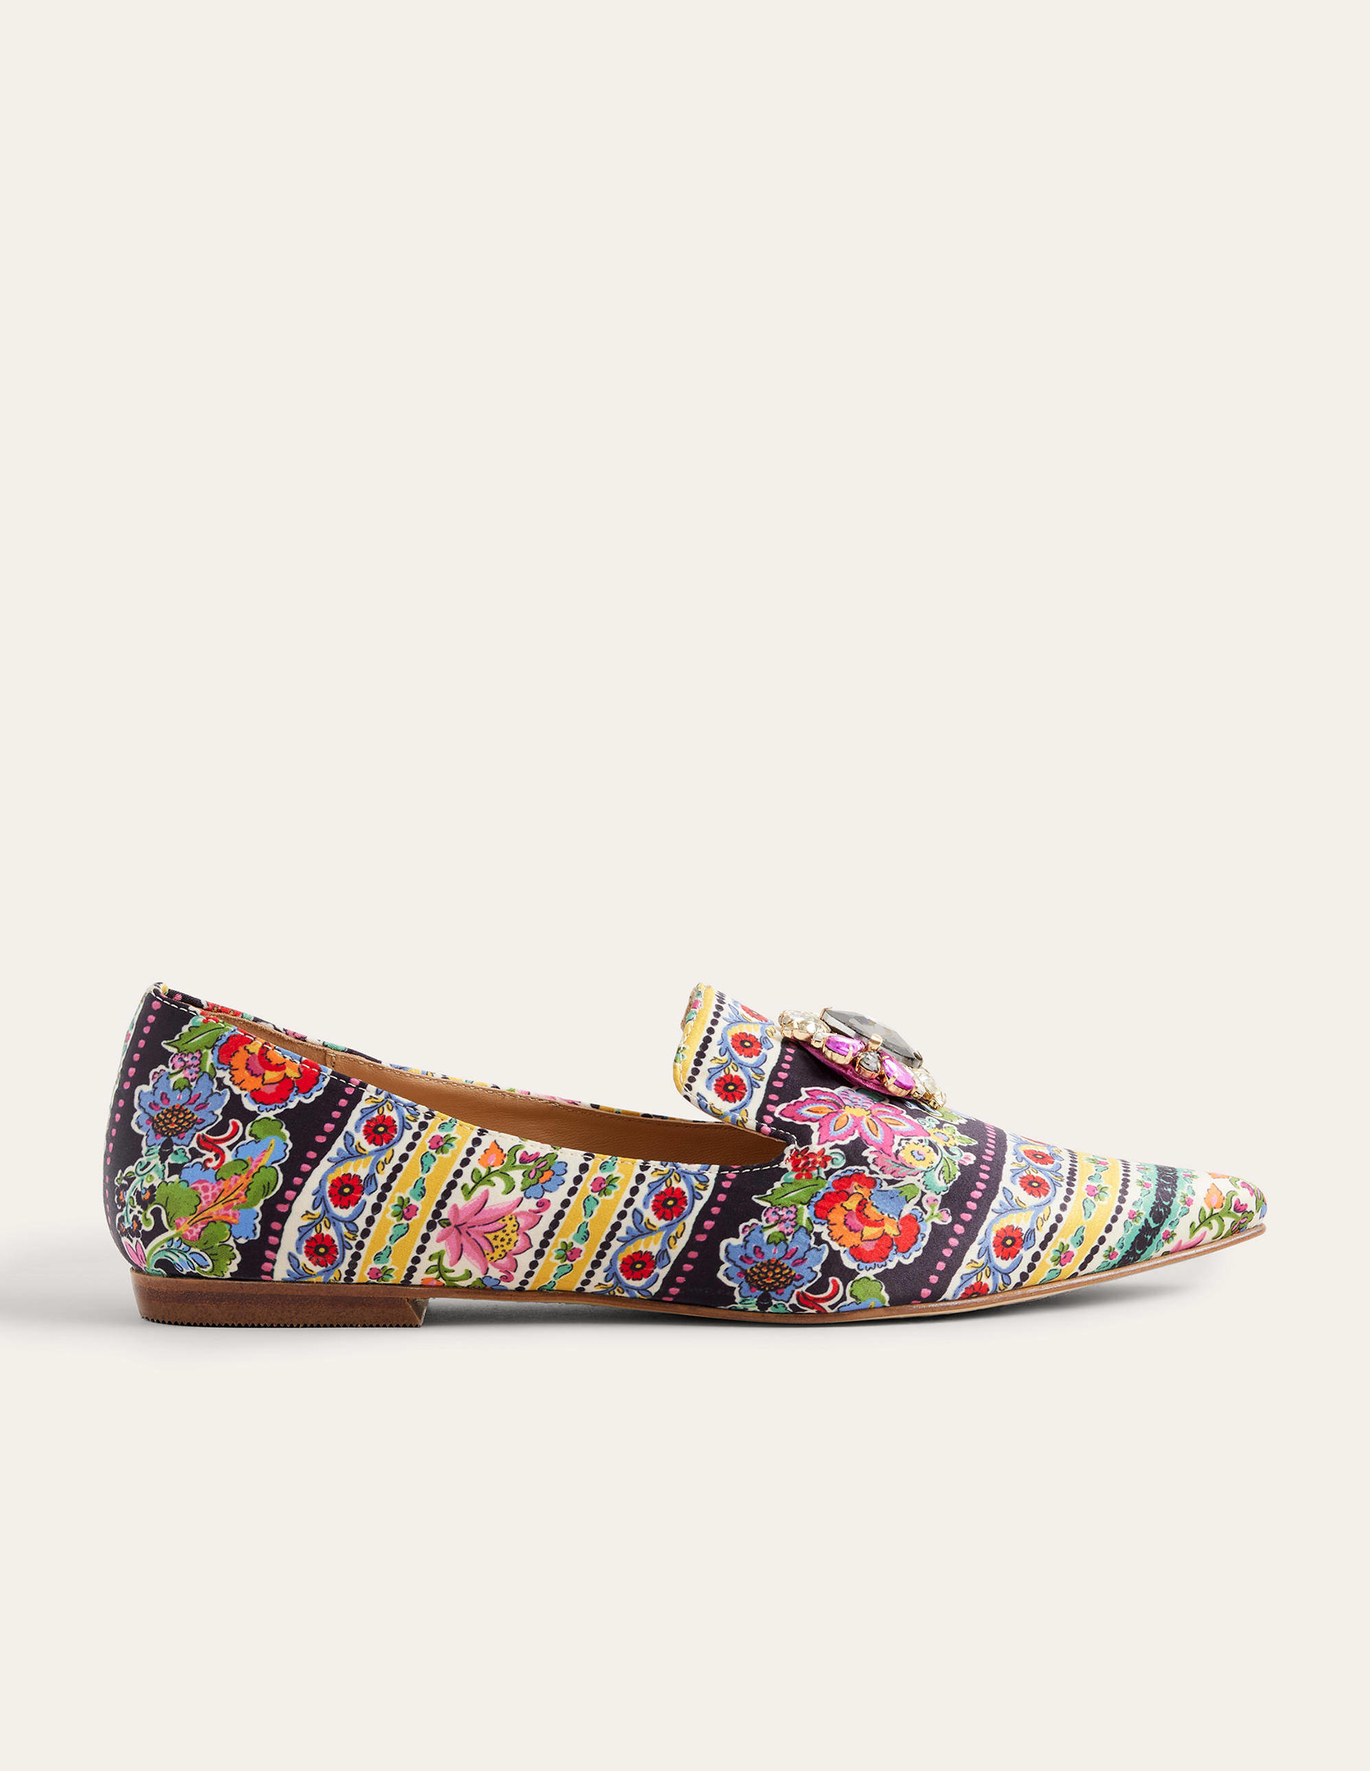 Boden Printed Embellished Loafers - Carnation Bloom